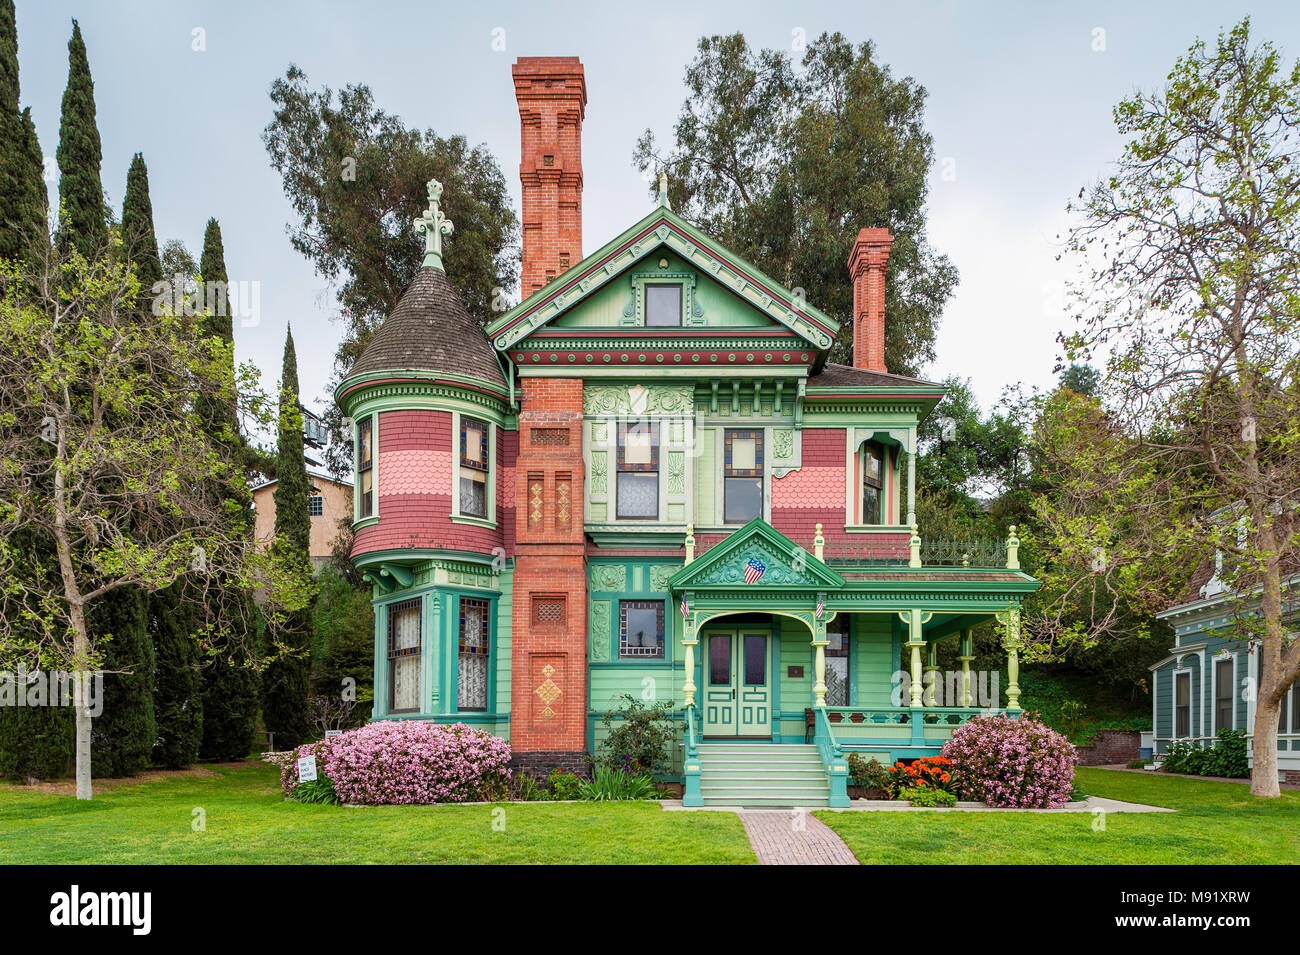 Hale House à Los Angeles en Californie, un manoir victorien de style Queen Anne construite en 1887 Banque D'Images